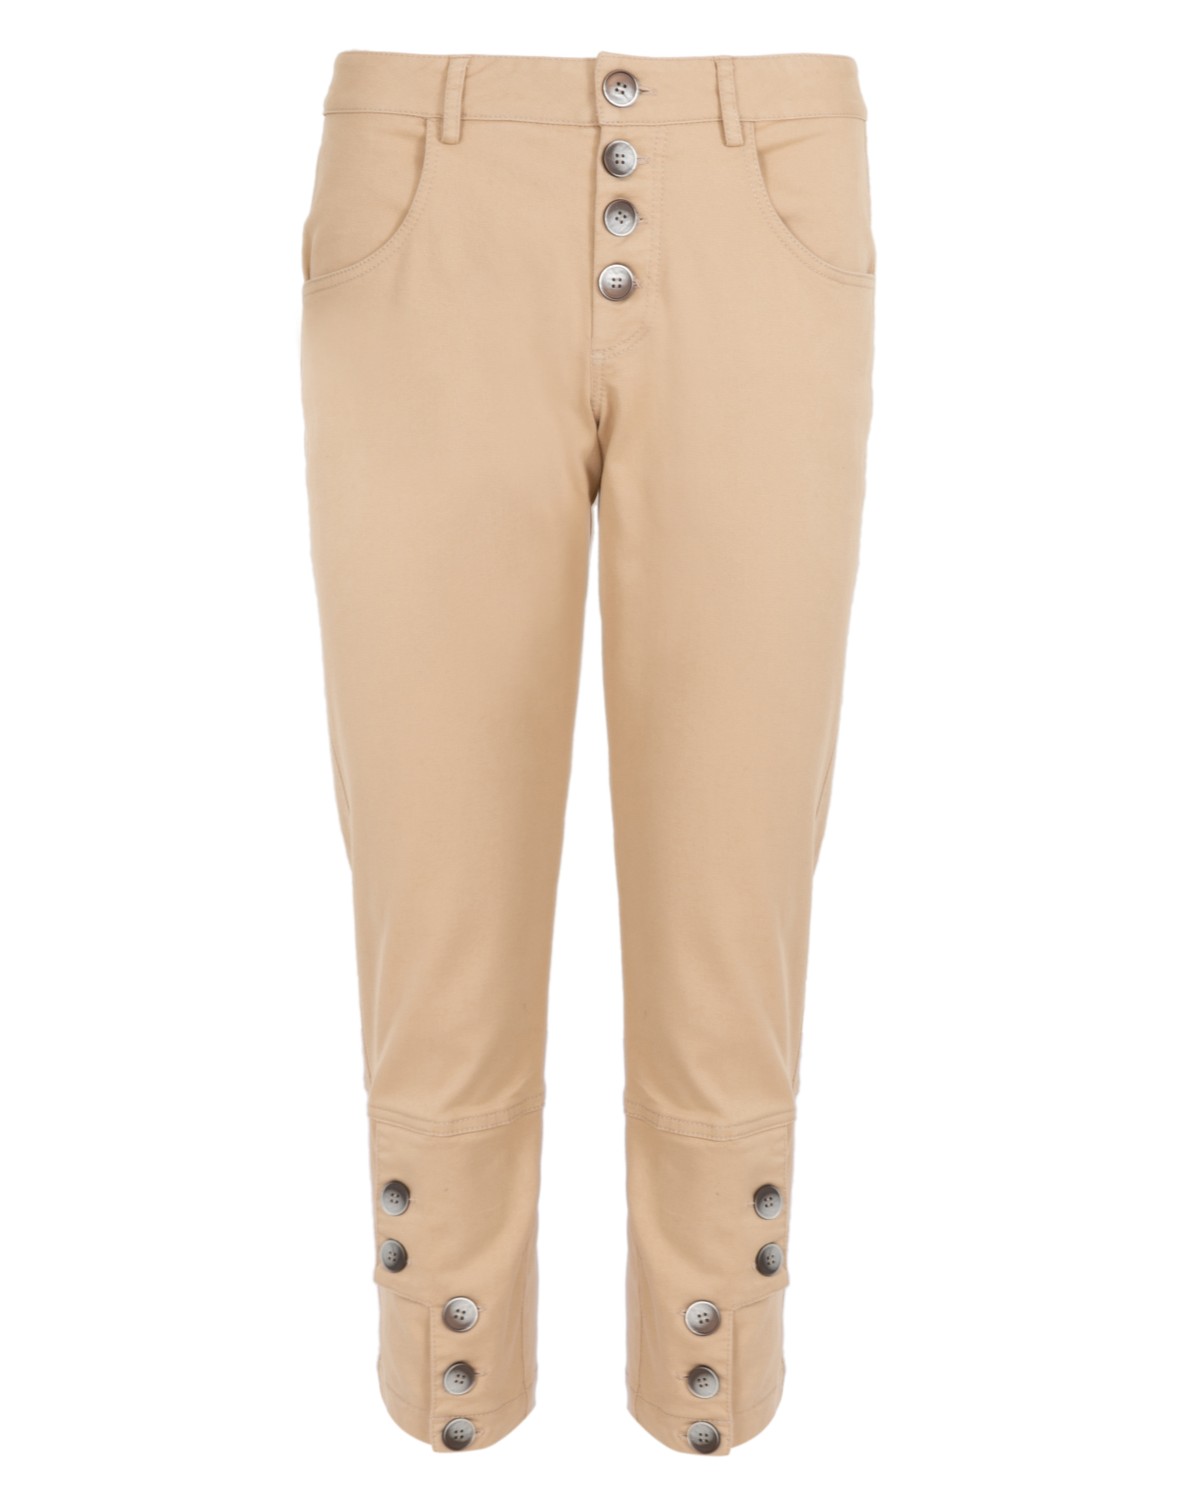 calça em sarja com botões | modal twill pants with buttons